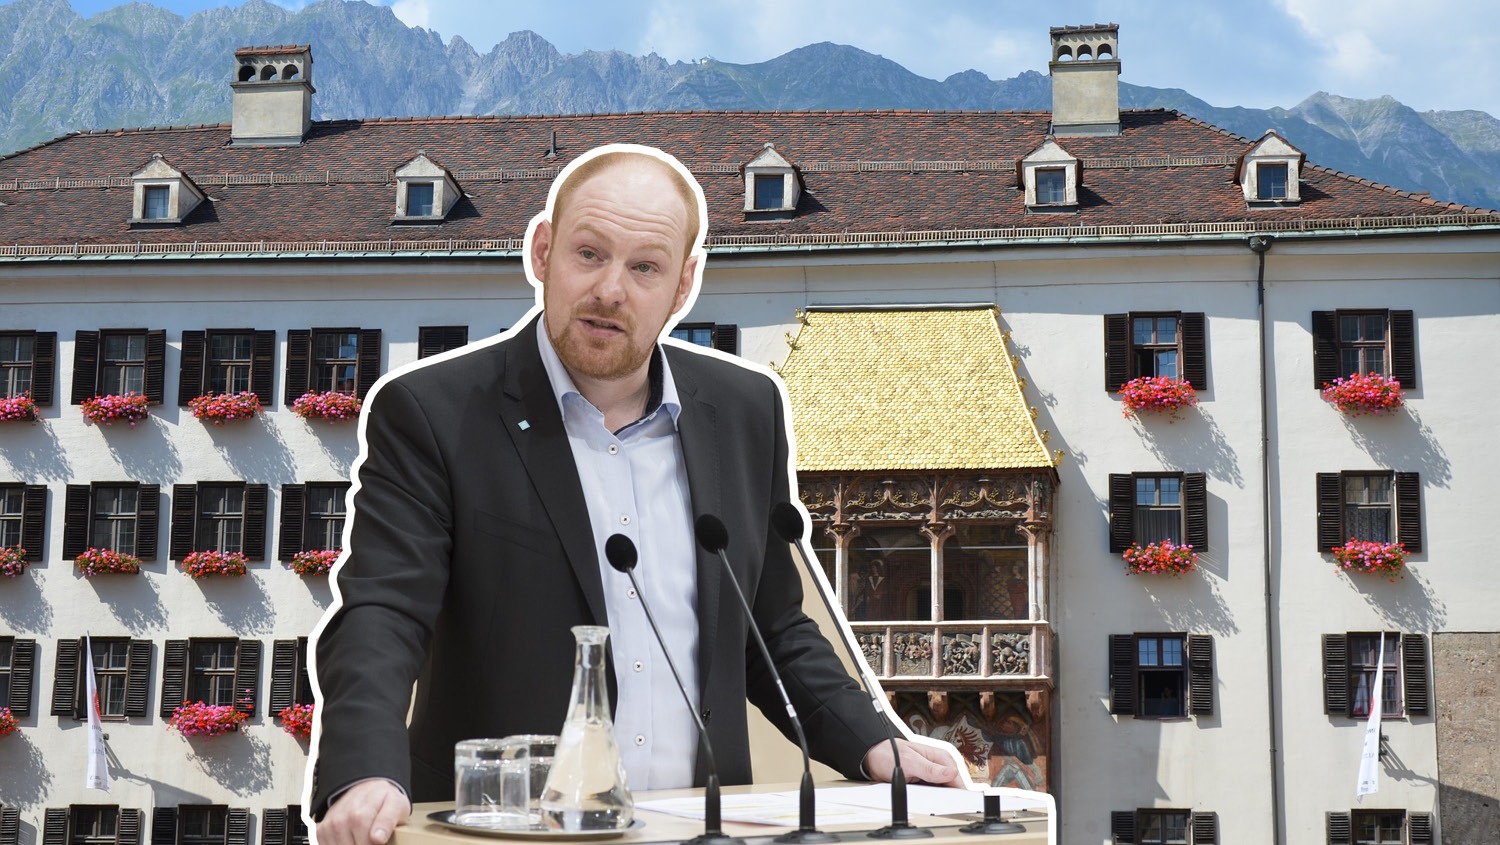 Innsbrucker teilstädtisches Unternehmen spendete 8.400 Euro an ÖVP-Kandidaten Schrott